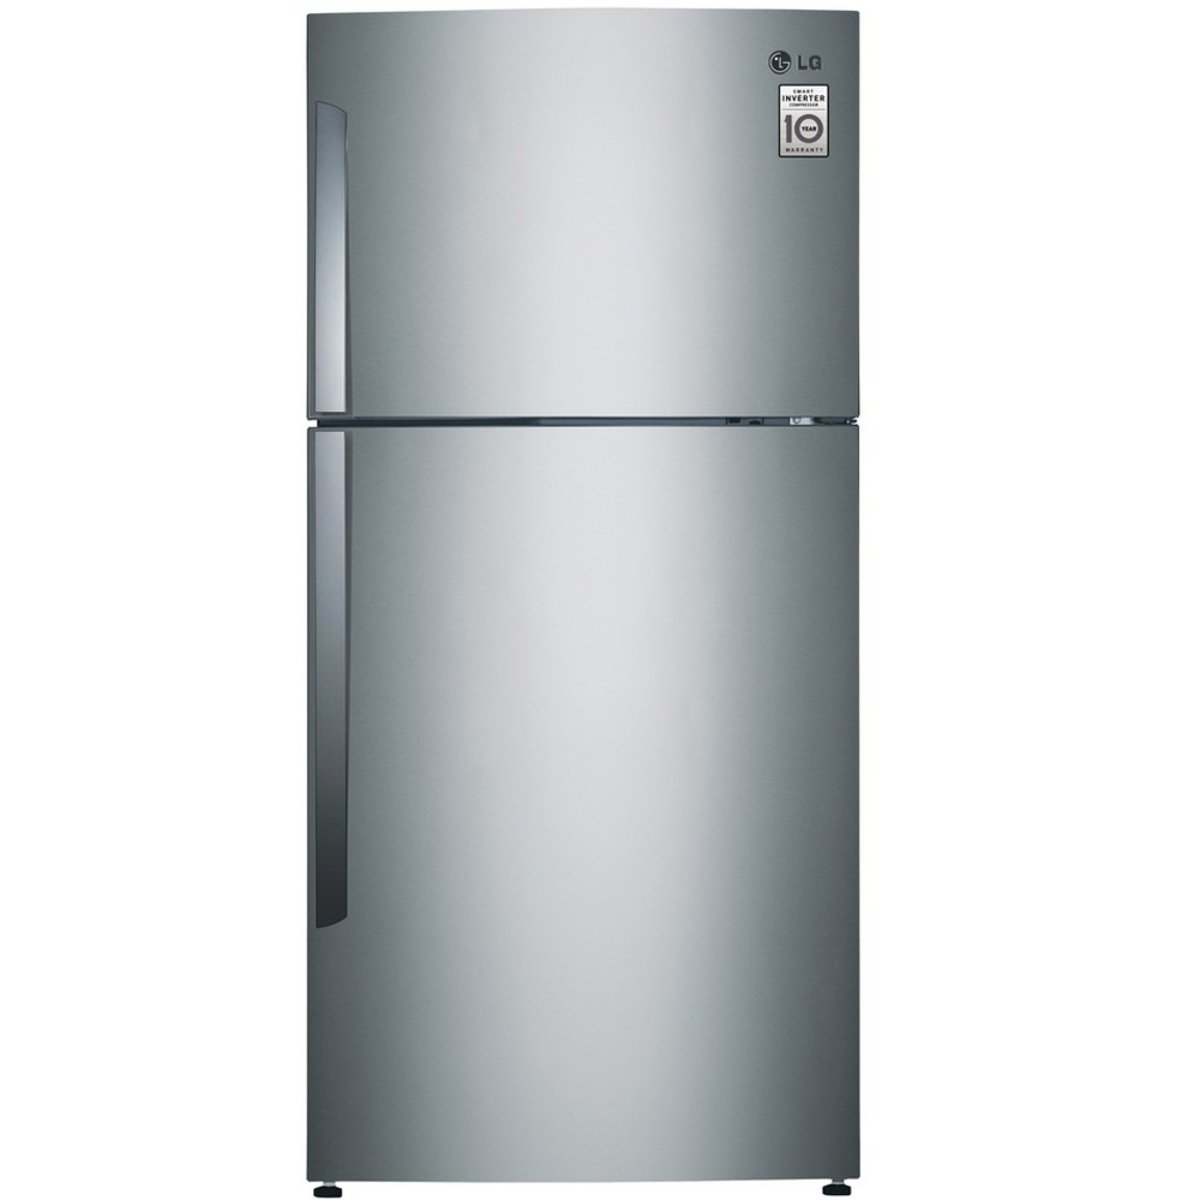 LG Double Door Refrigerator GRB600GLHL 600 Ltr